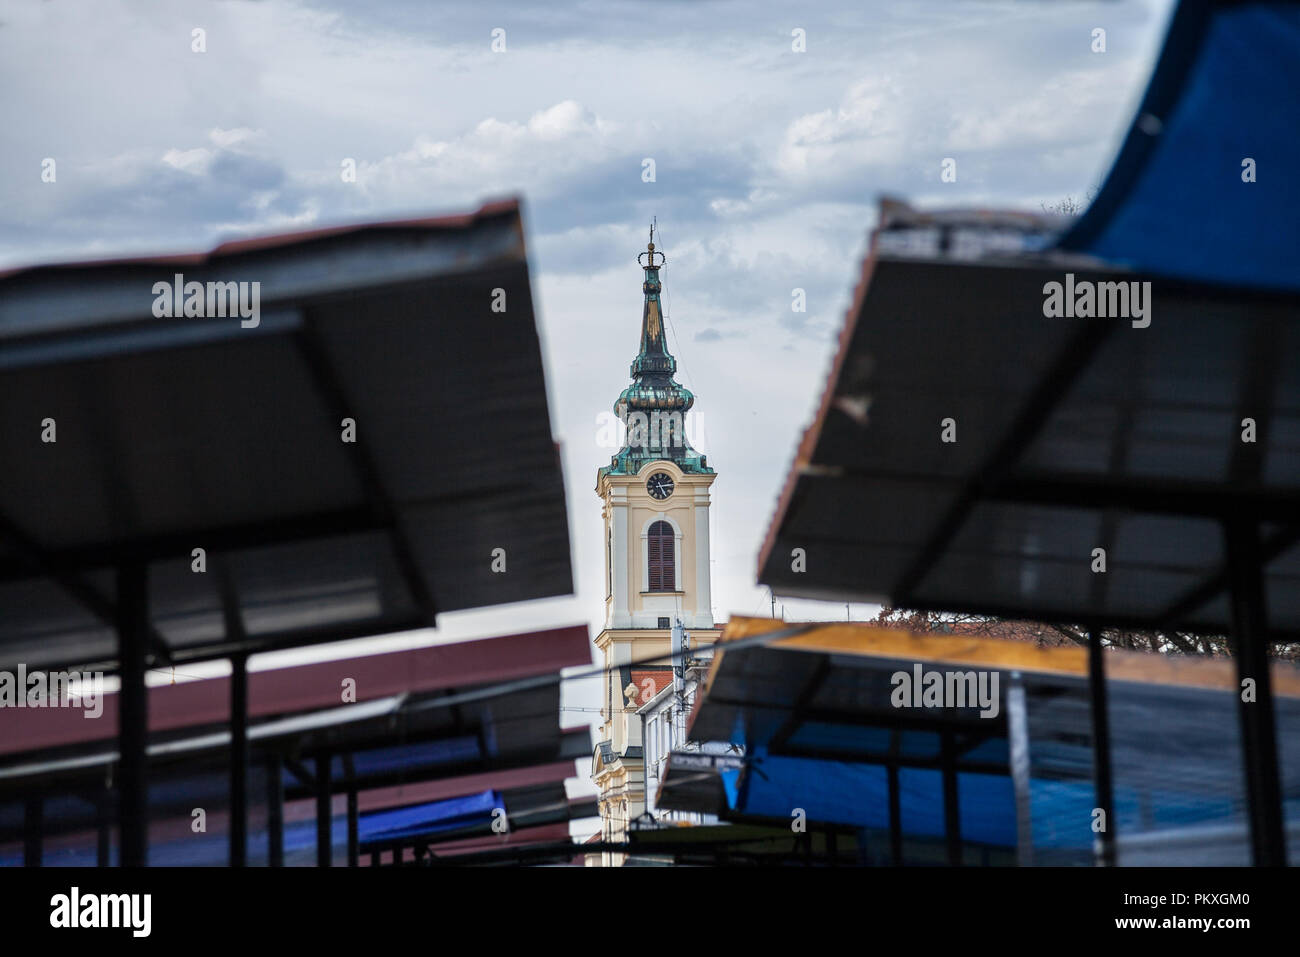 Nikolajevska crkva Kirche in der Innenstadt von Zemun, von den Ständen der nahe gelegenen Markt gesehen, mit seinem Wahrzeichen Clock Tower zeigt. Zemun ist ein malerisches s Stockfoto